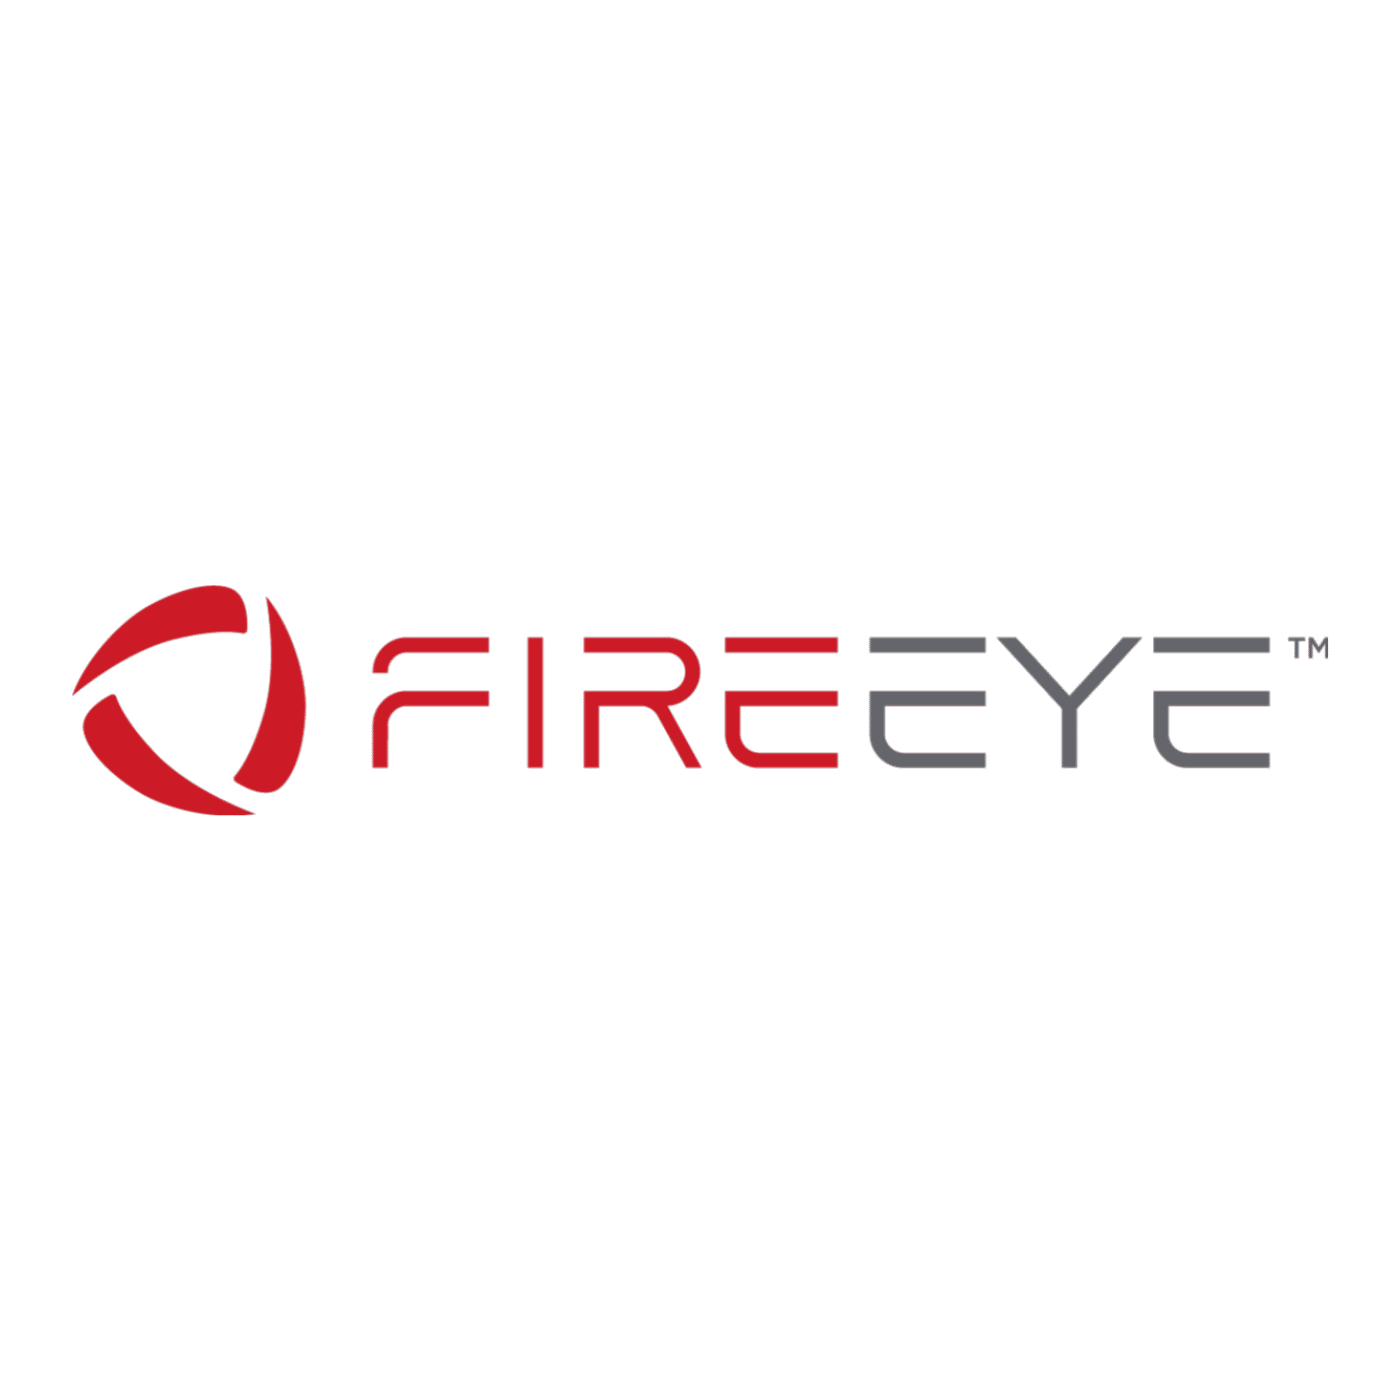 Le logo de l'entreprise de cybersécurité FireEye